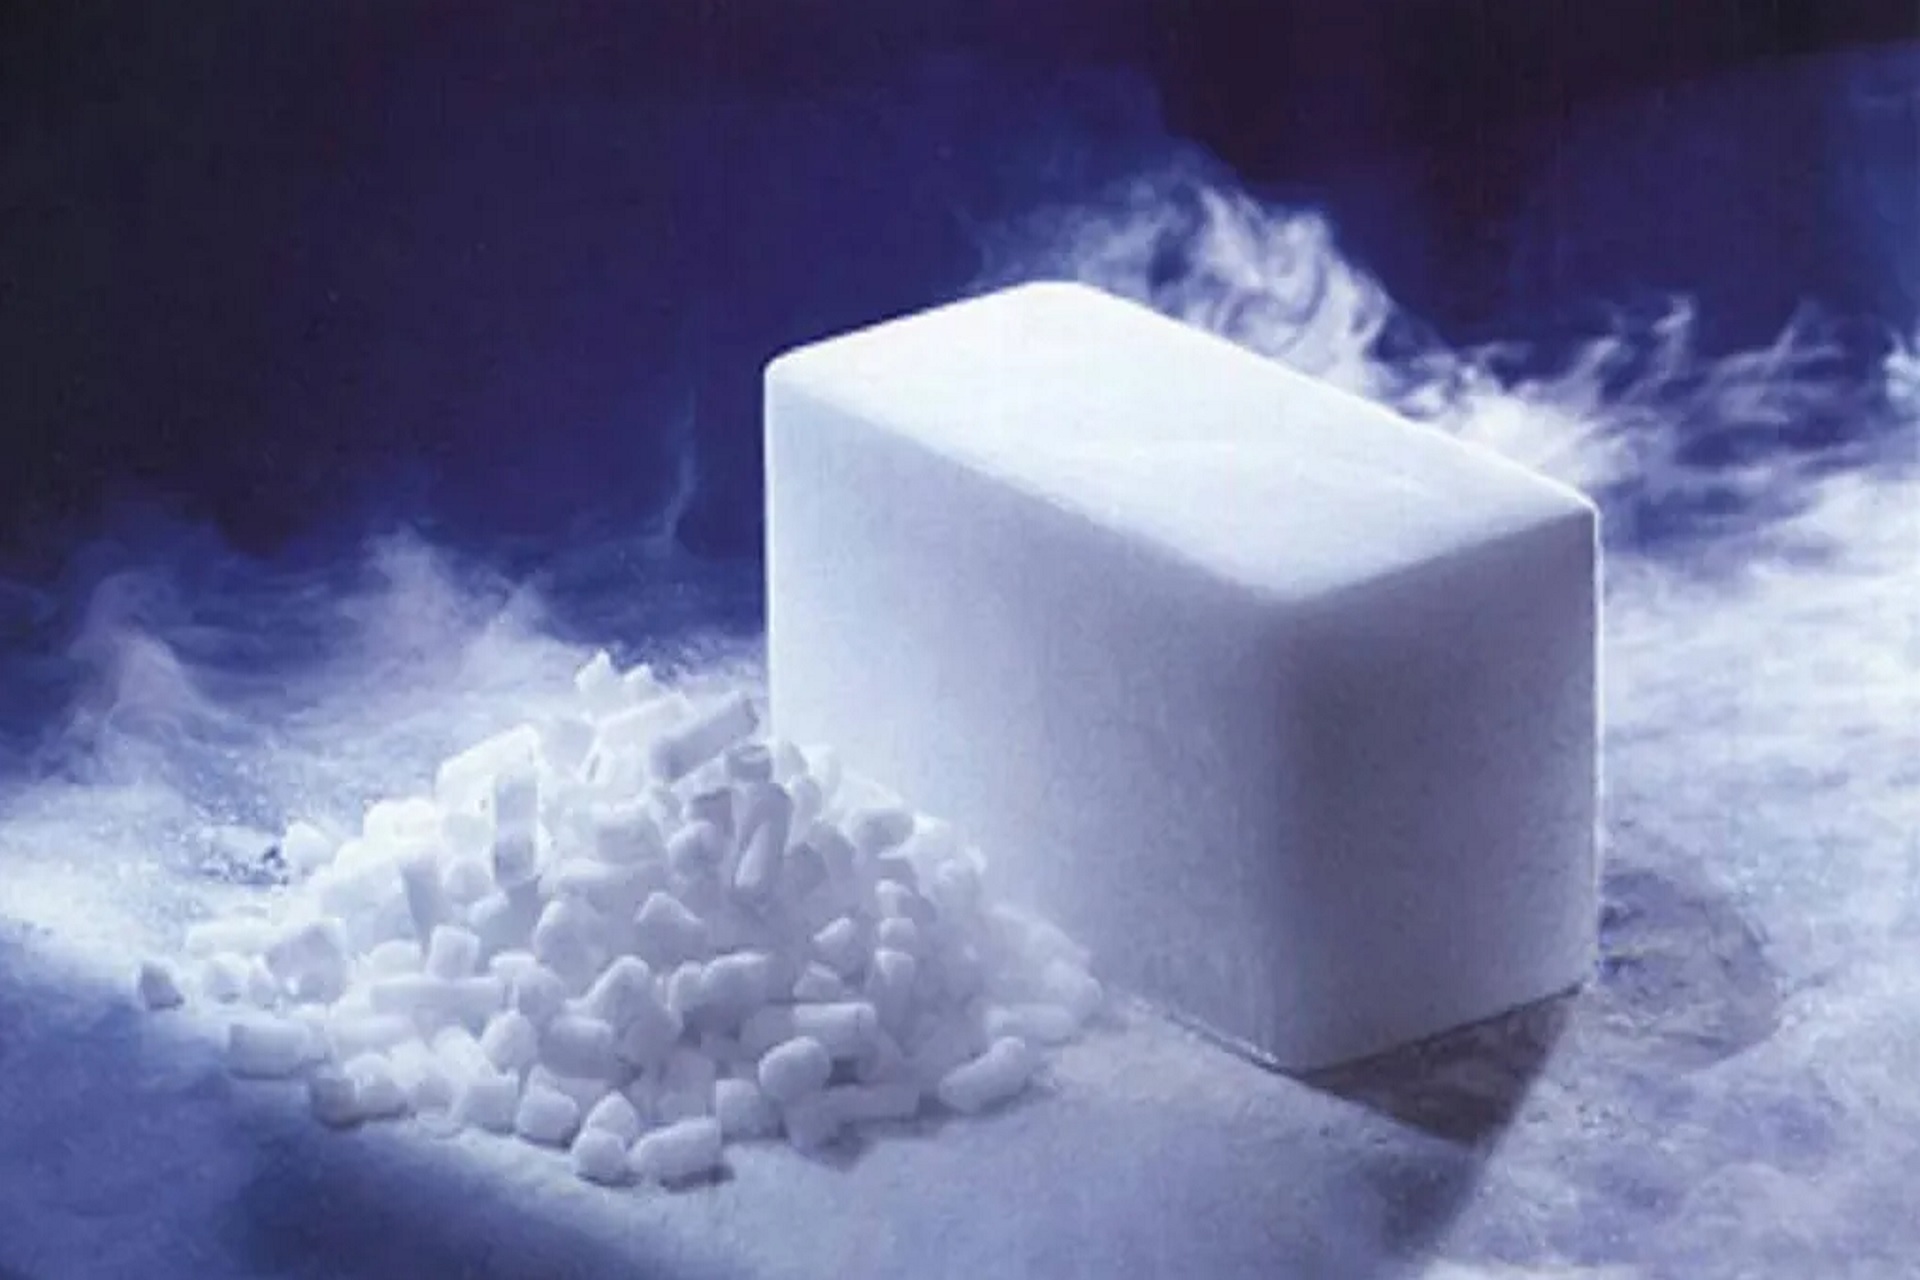 Suchy lód - jego zastosowanie w medycynie i wykorzystanie w branży medycznej